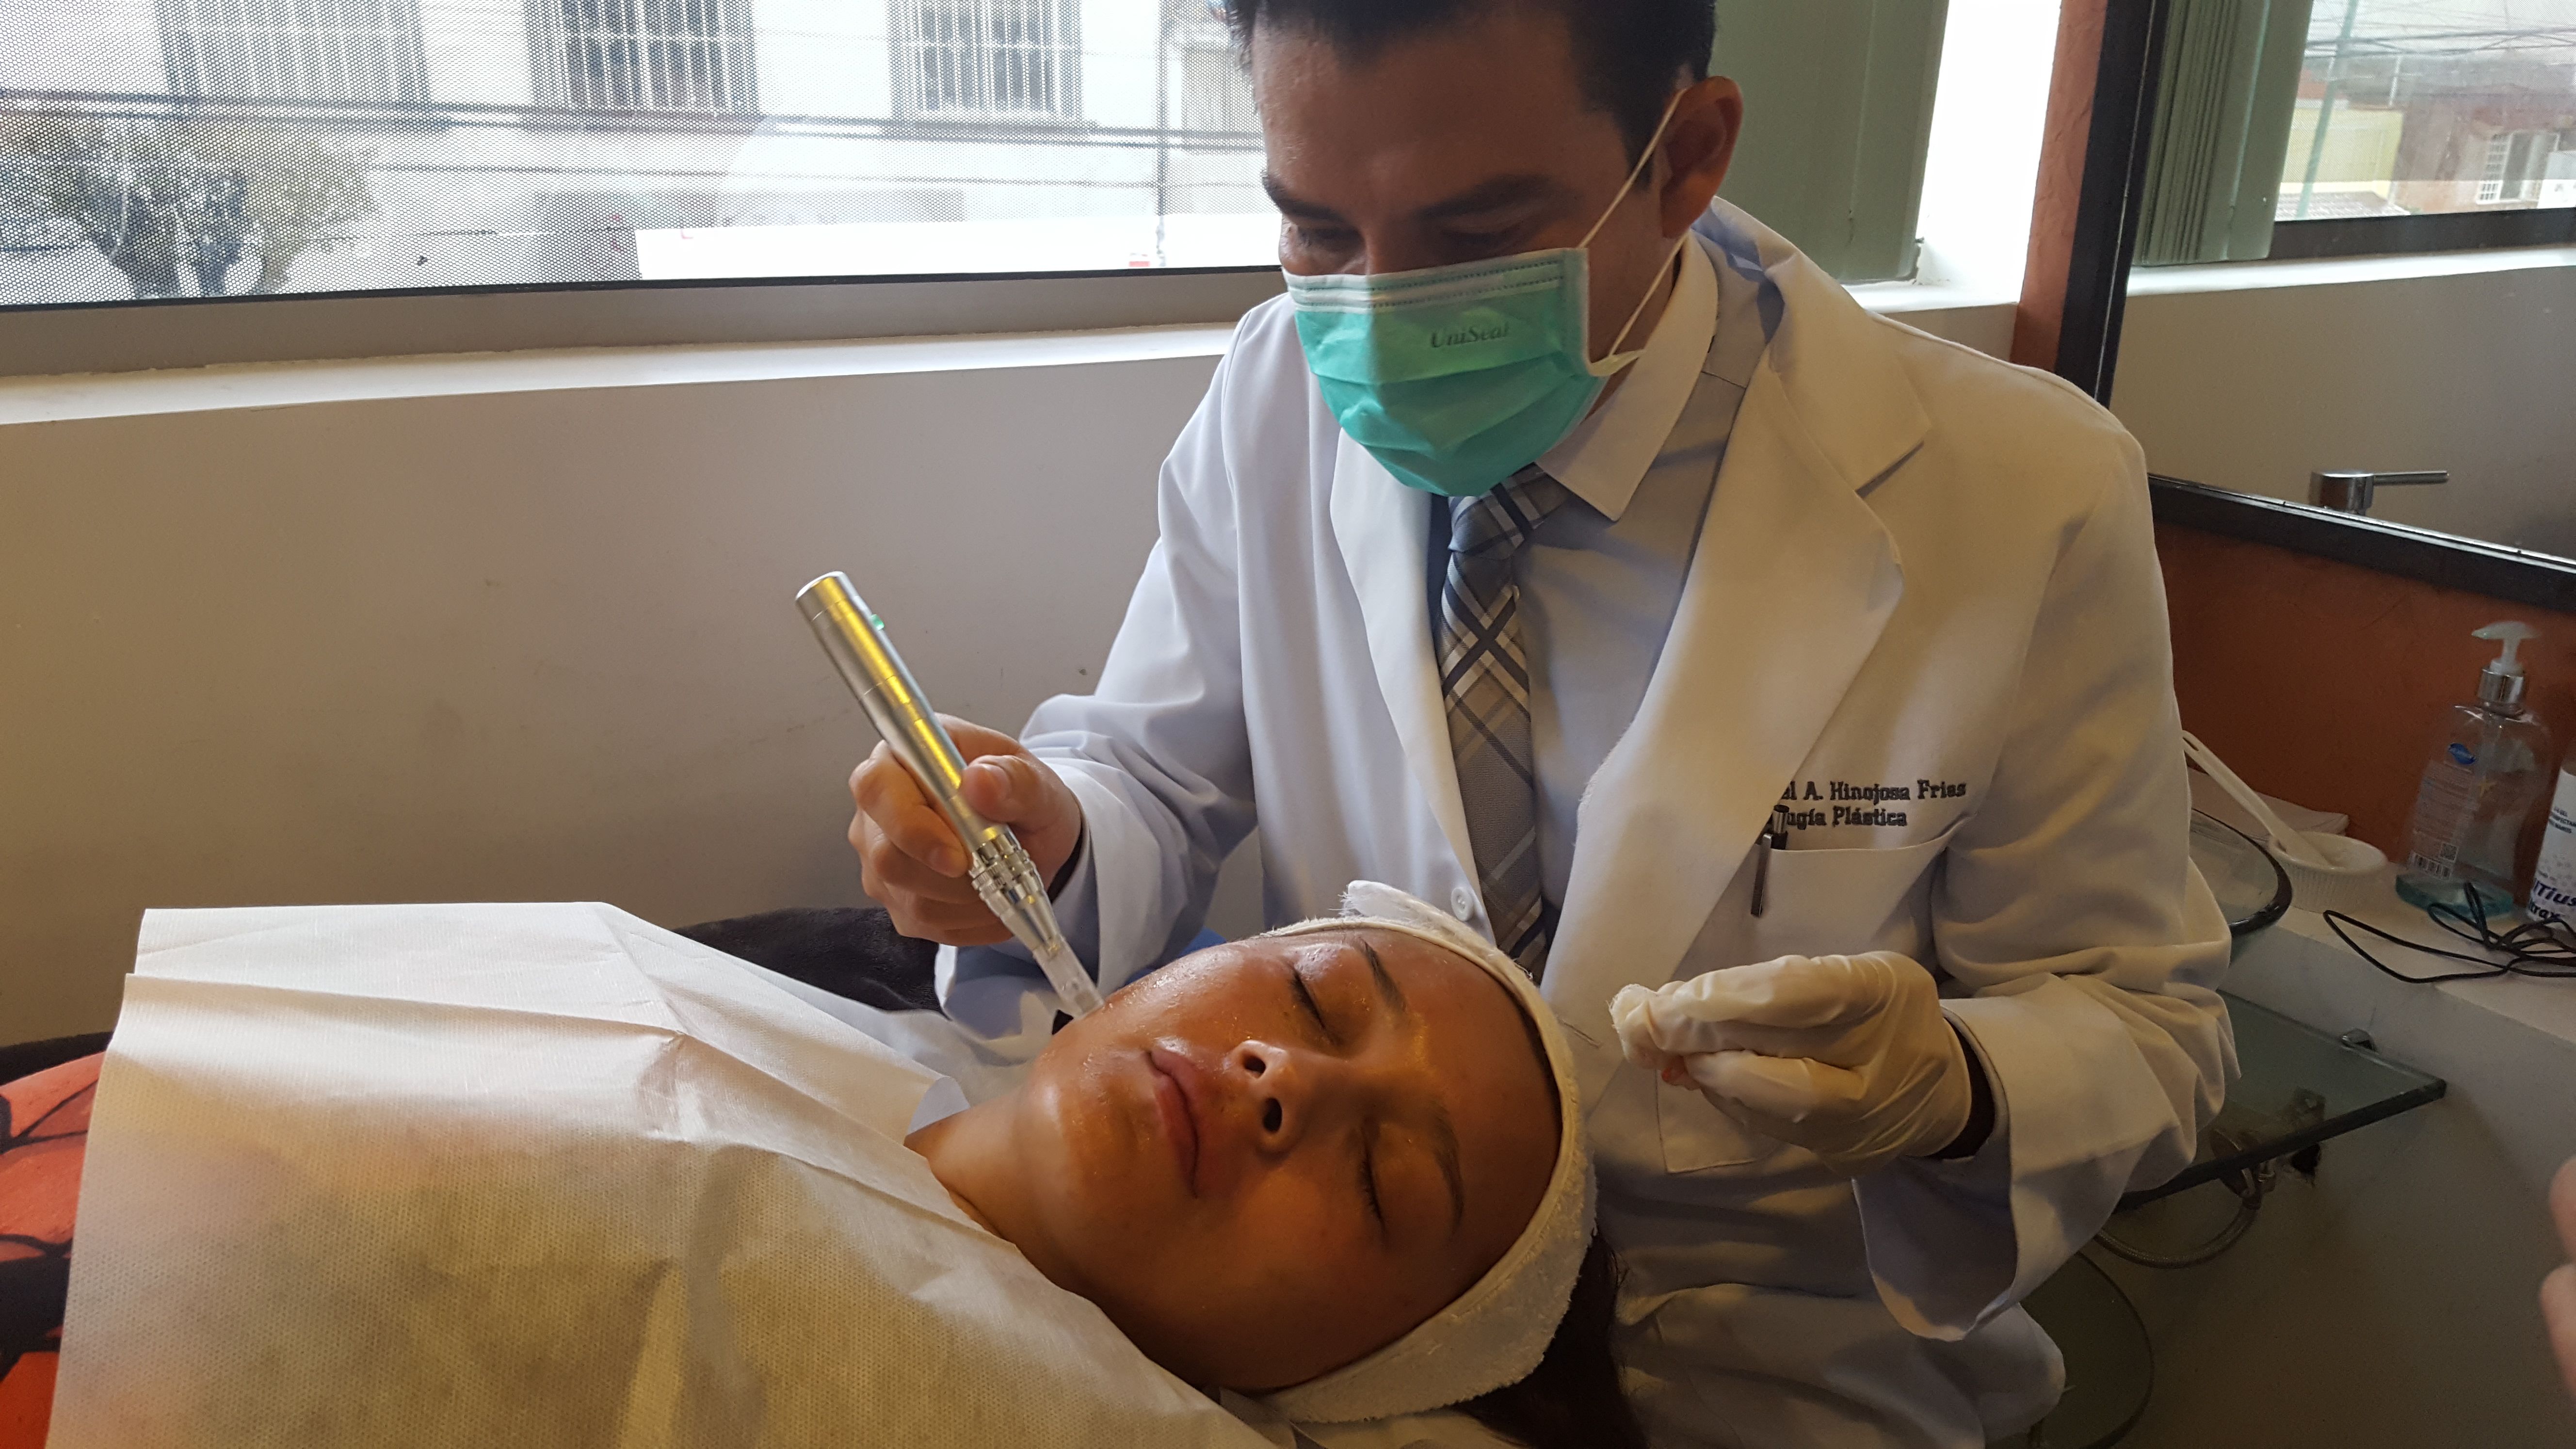 Dr. haciendo tratamiento facial a una paciente